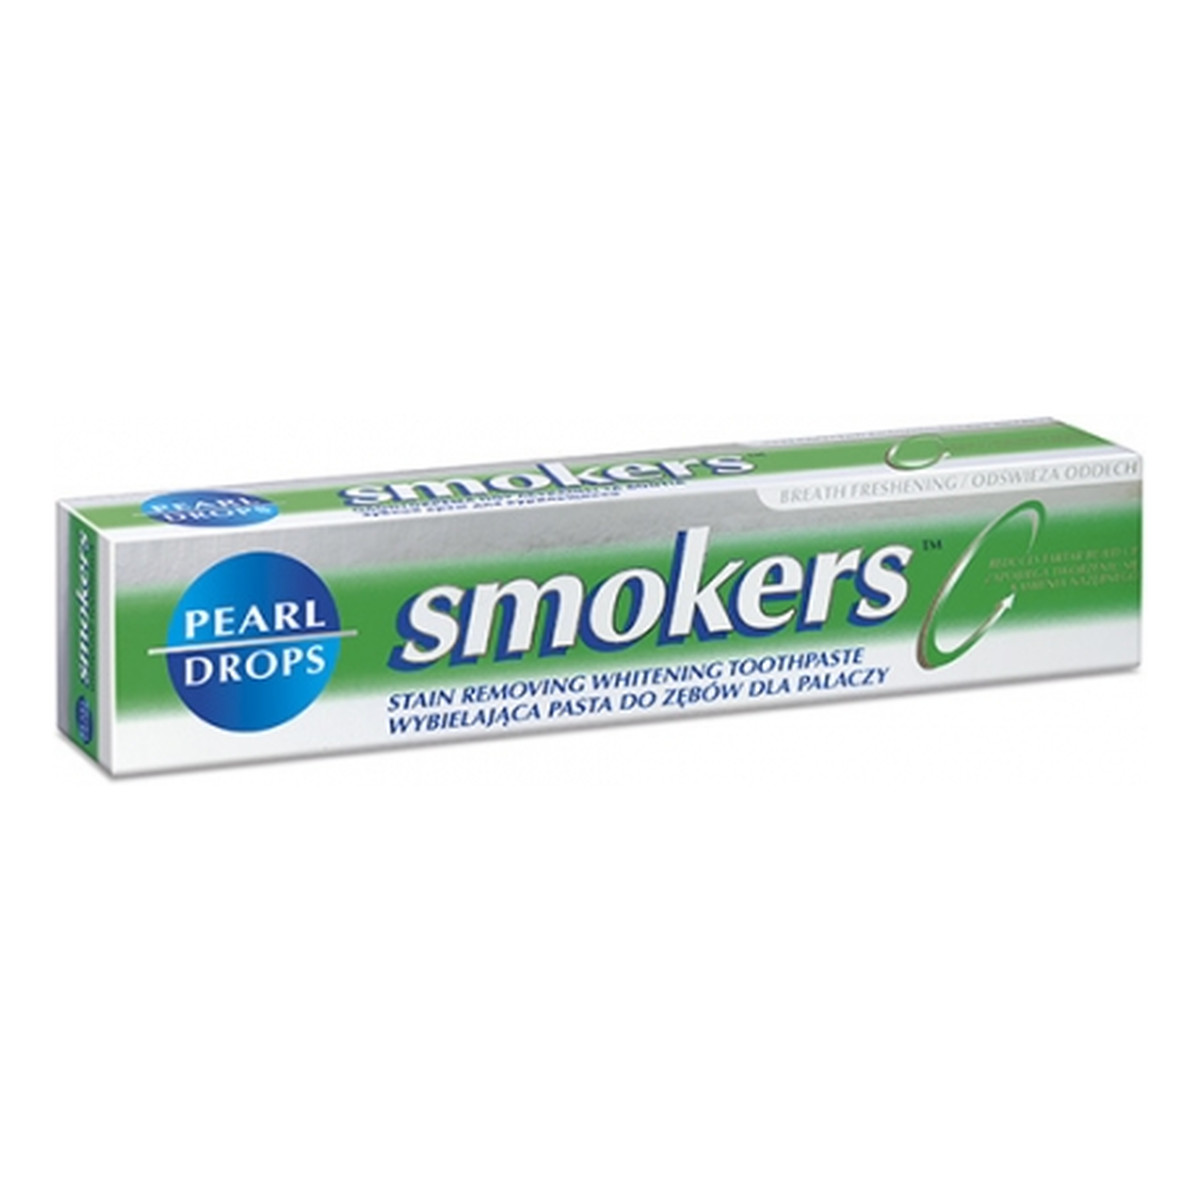 Pearl Drops Smokers Pasta Do Zębów Dla Palaczy 75ml